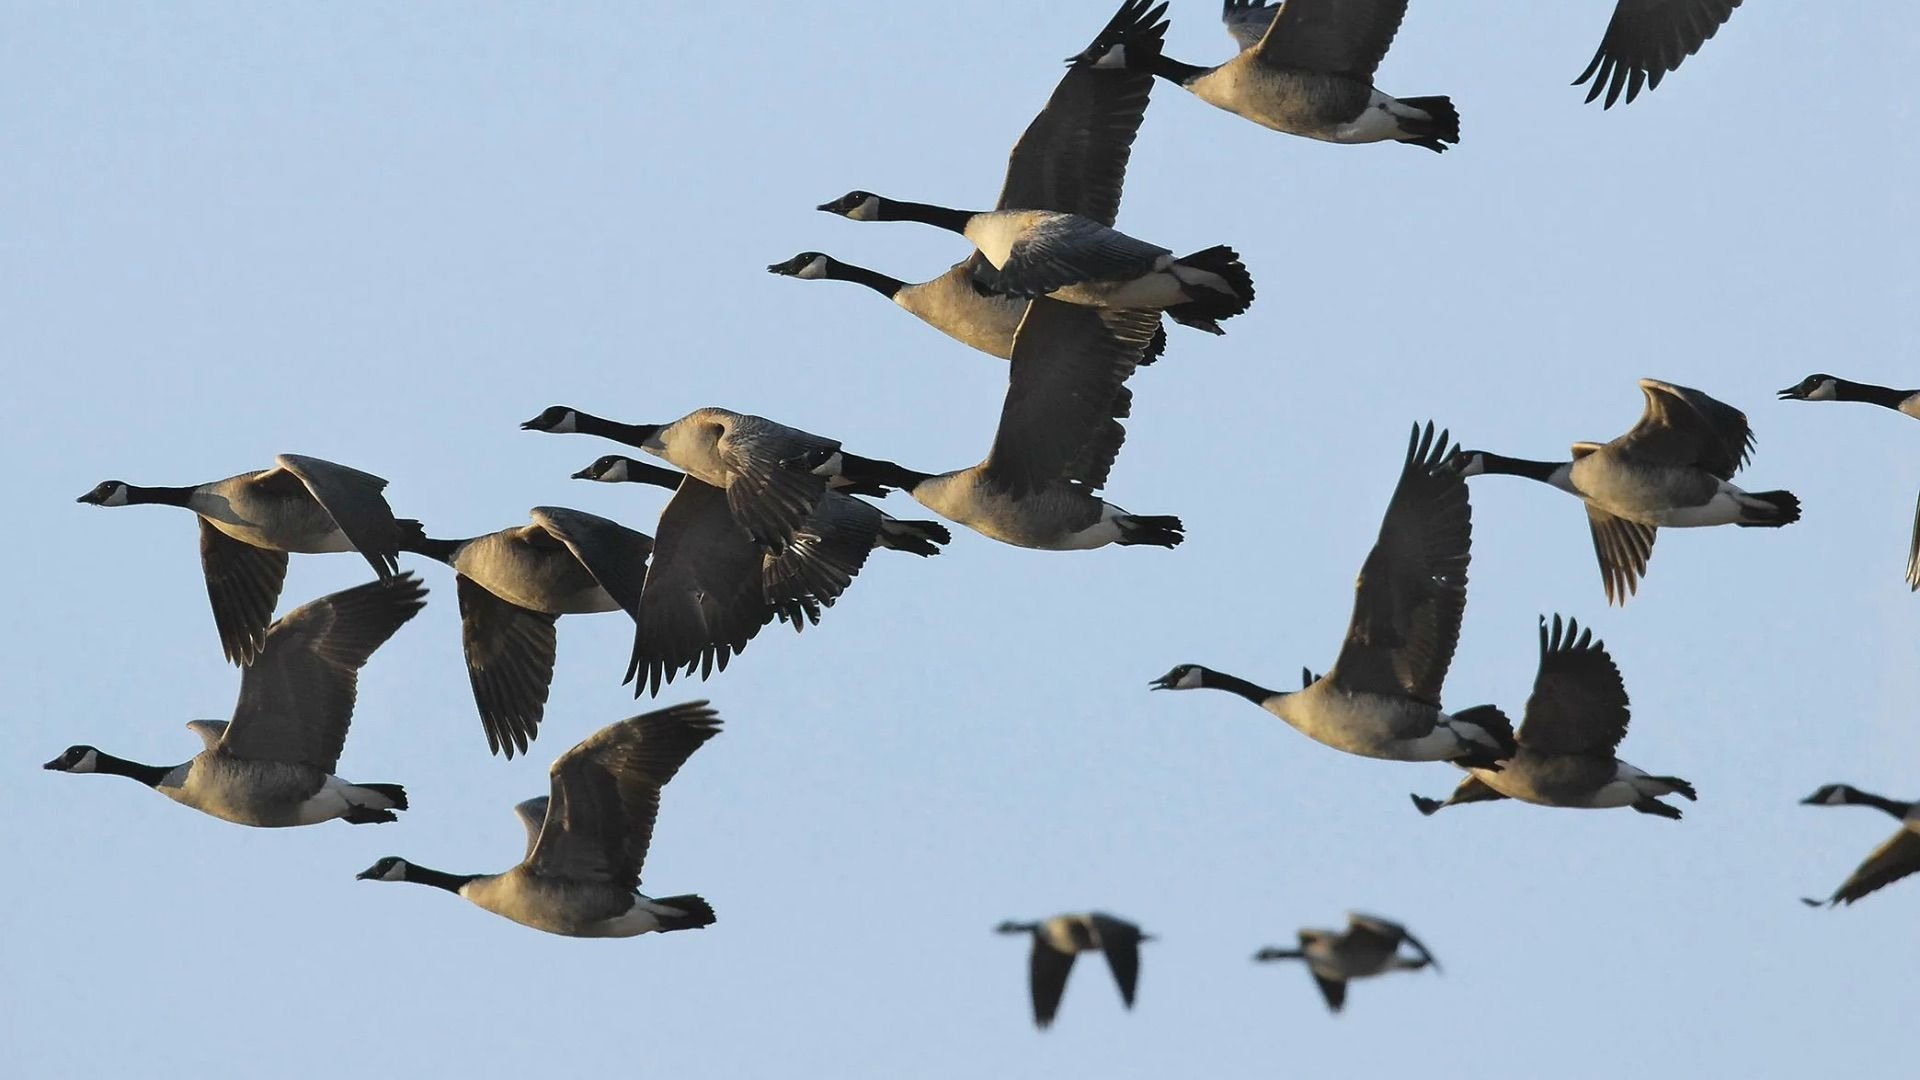 Birds migrate. Миграция птиц. Мигрирующие птицы. Миграция животных и птиц. Сезонные миграции птиц.